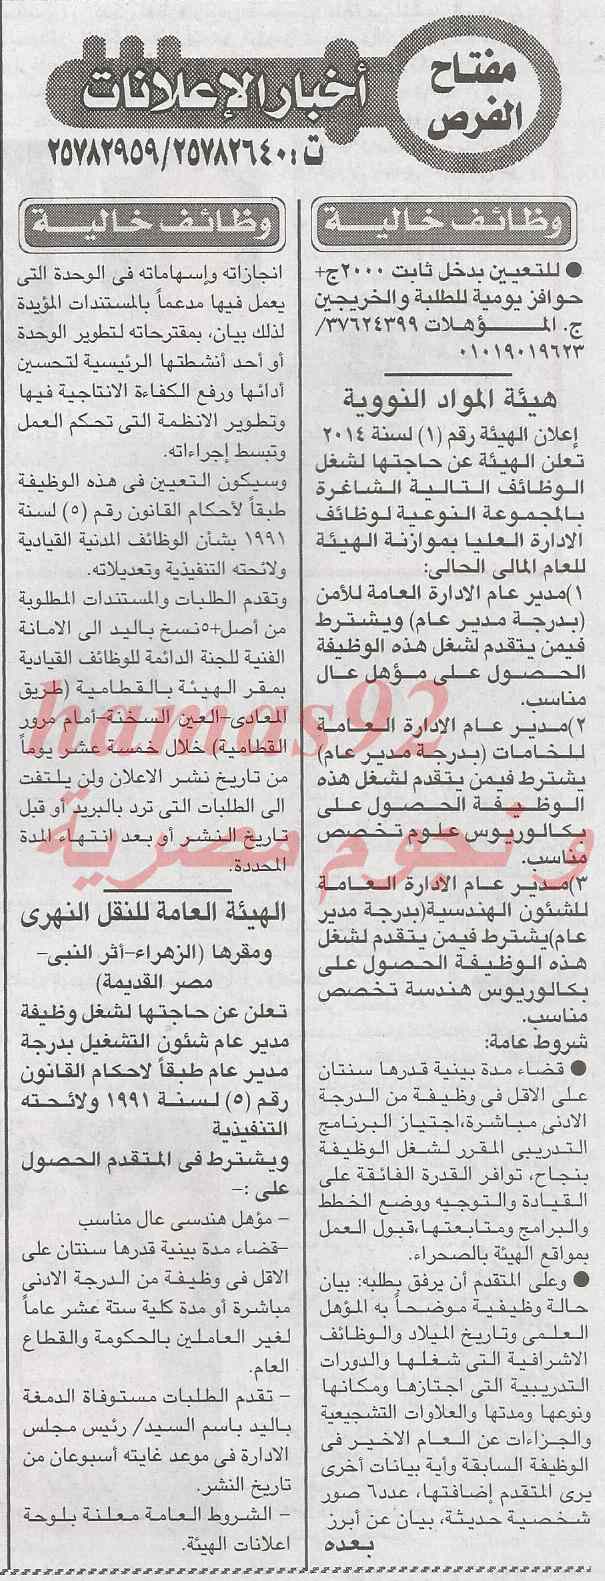 وظائف جريدة الاخبار اليوم الجمعة 31-1-2014 , وظائف خالية في مصر 31 يناير 2014